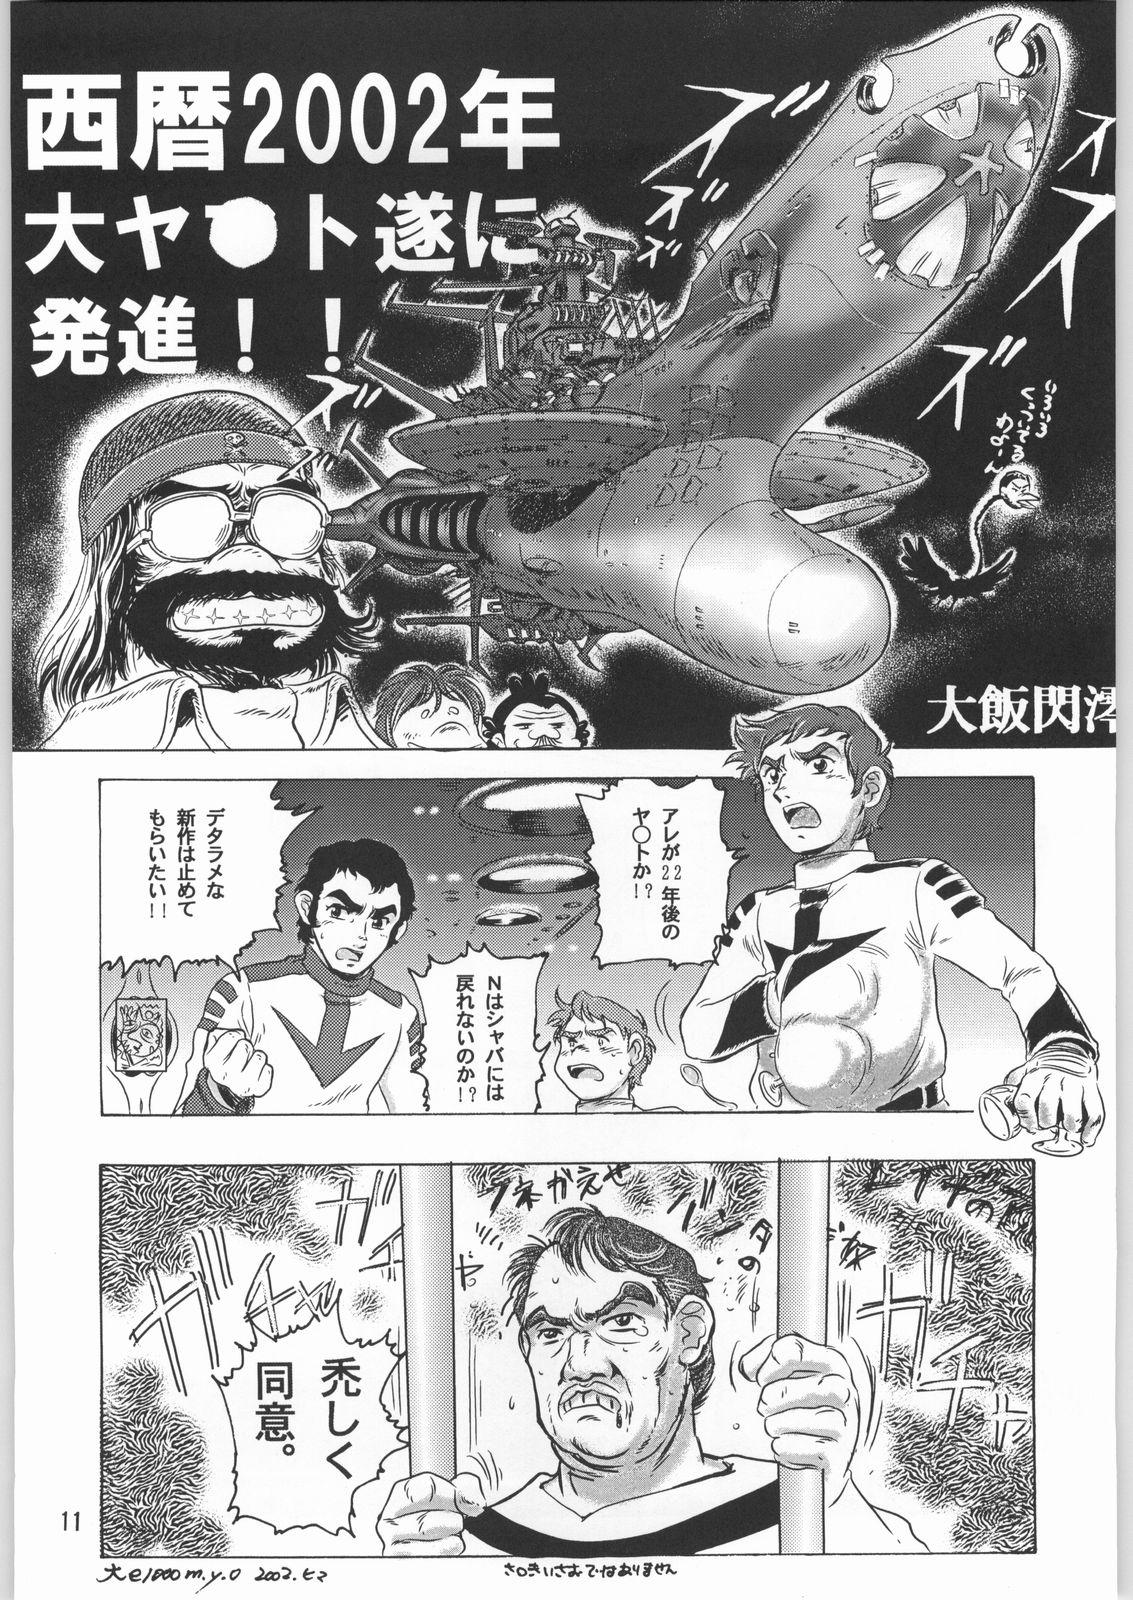 Sloppy Blow Job Megaton Punch 1 - Space battleship yamato Chobits Grandpa - Page 10